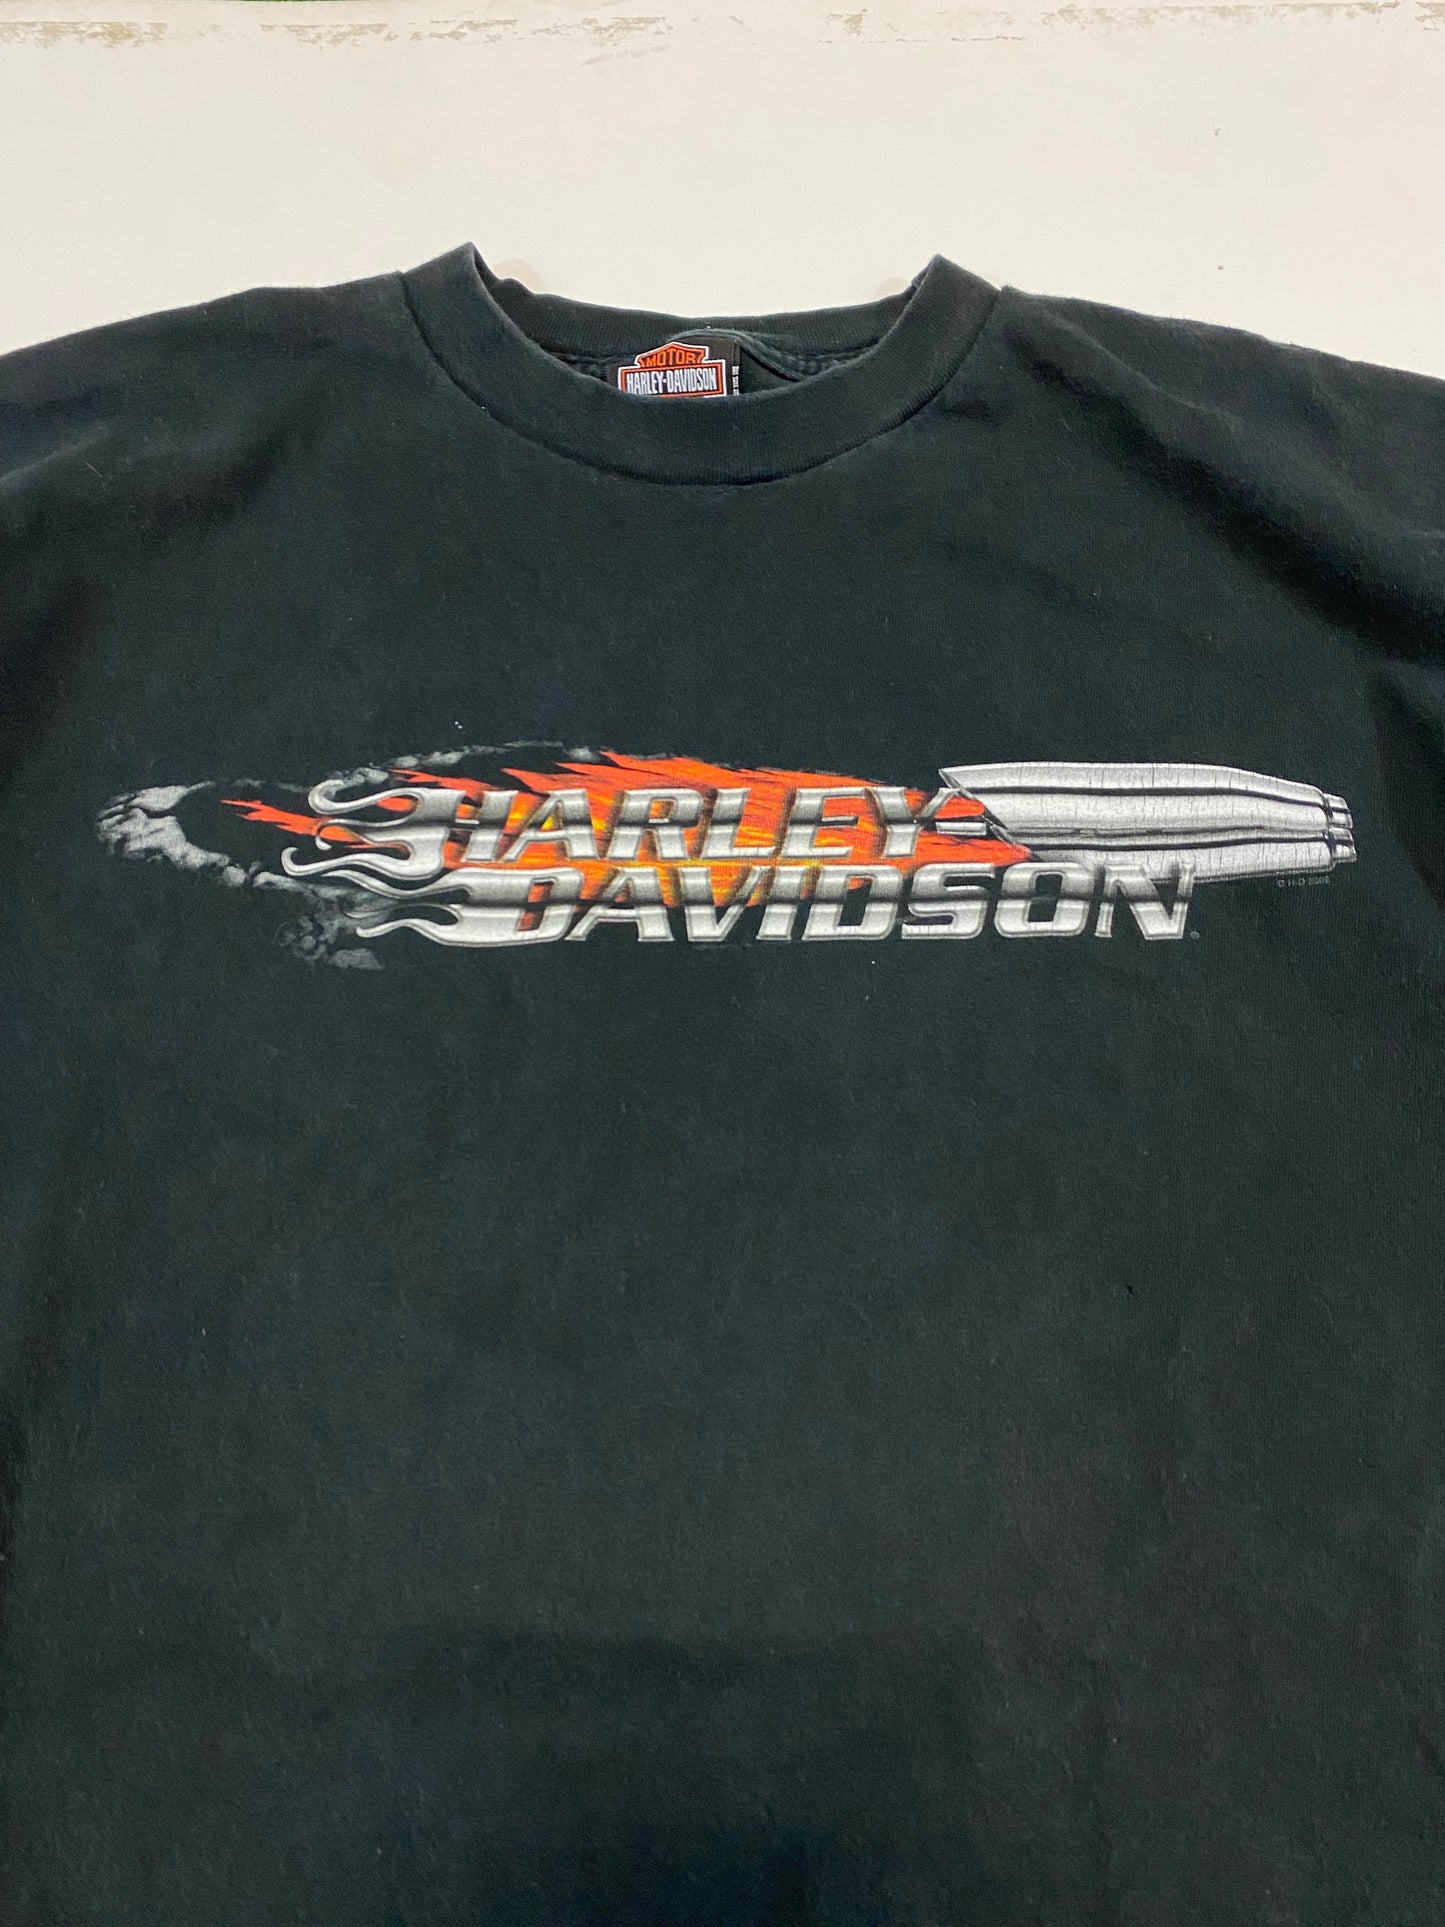 2002 Harley Davidson Naples FL T-Shirt XL